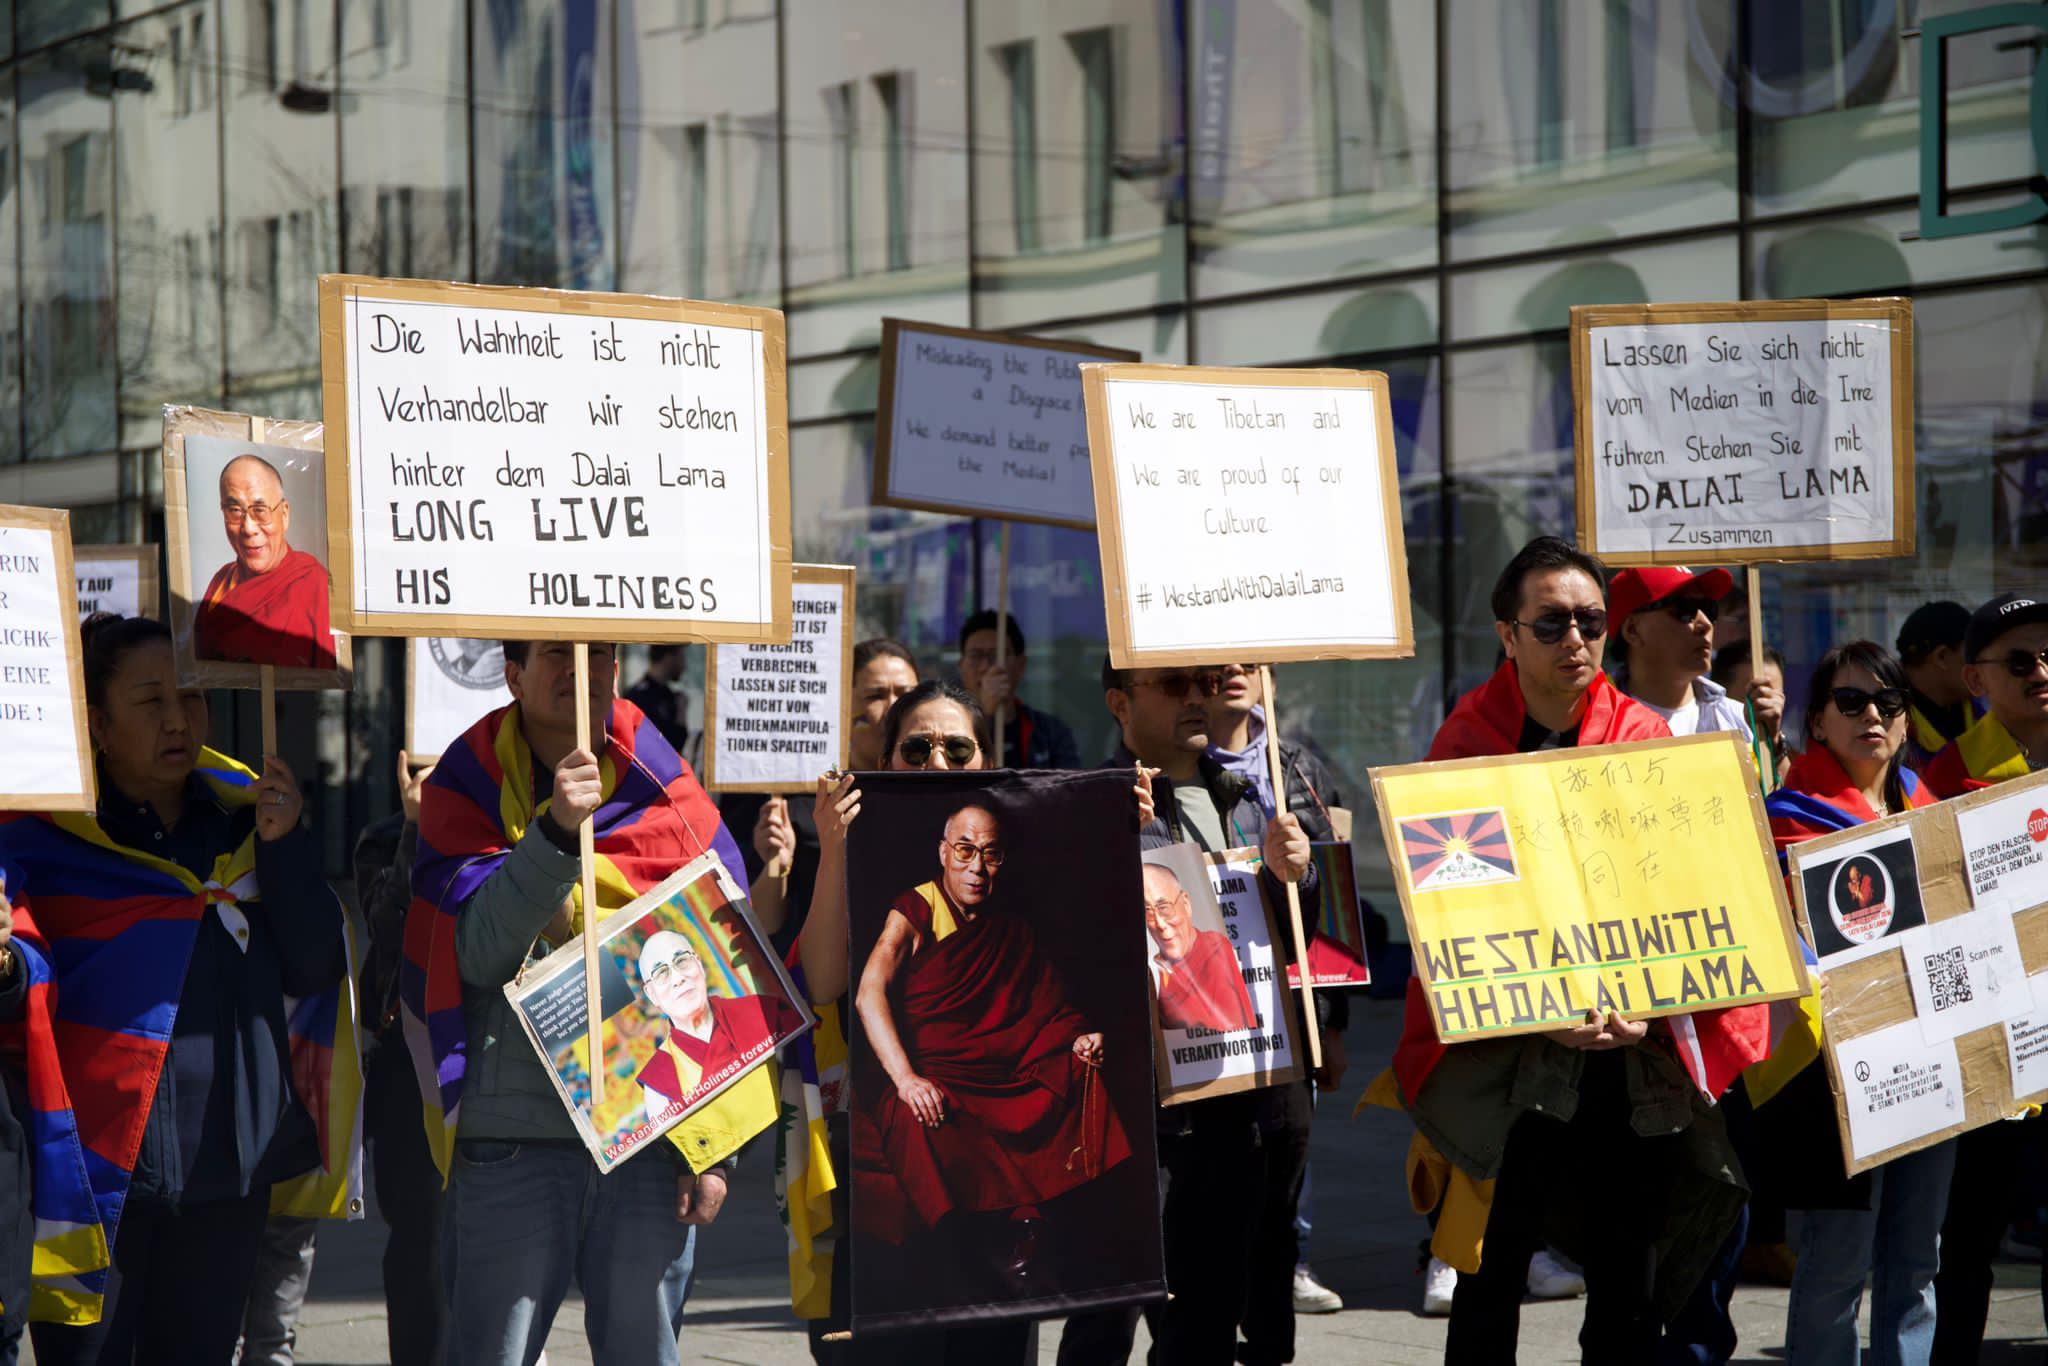 Solidaridätskundgebung der Tibeter in Linz